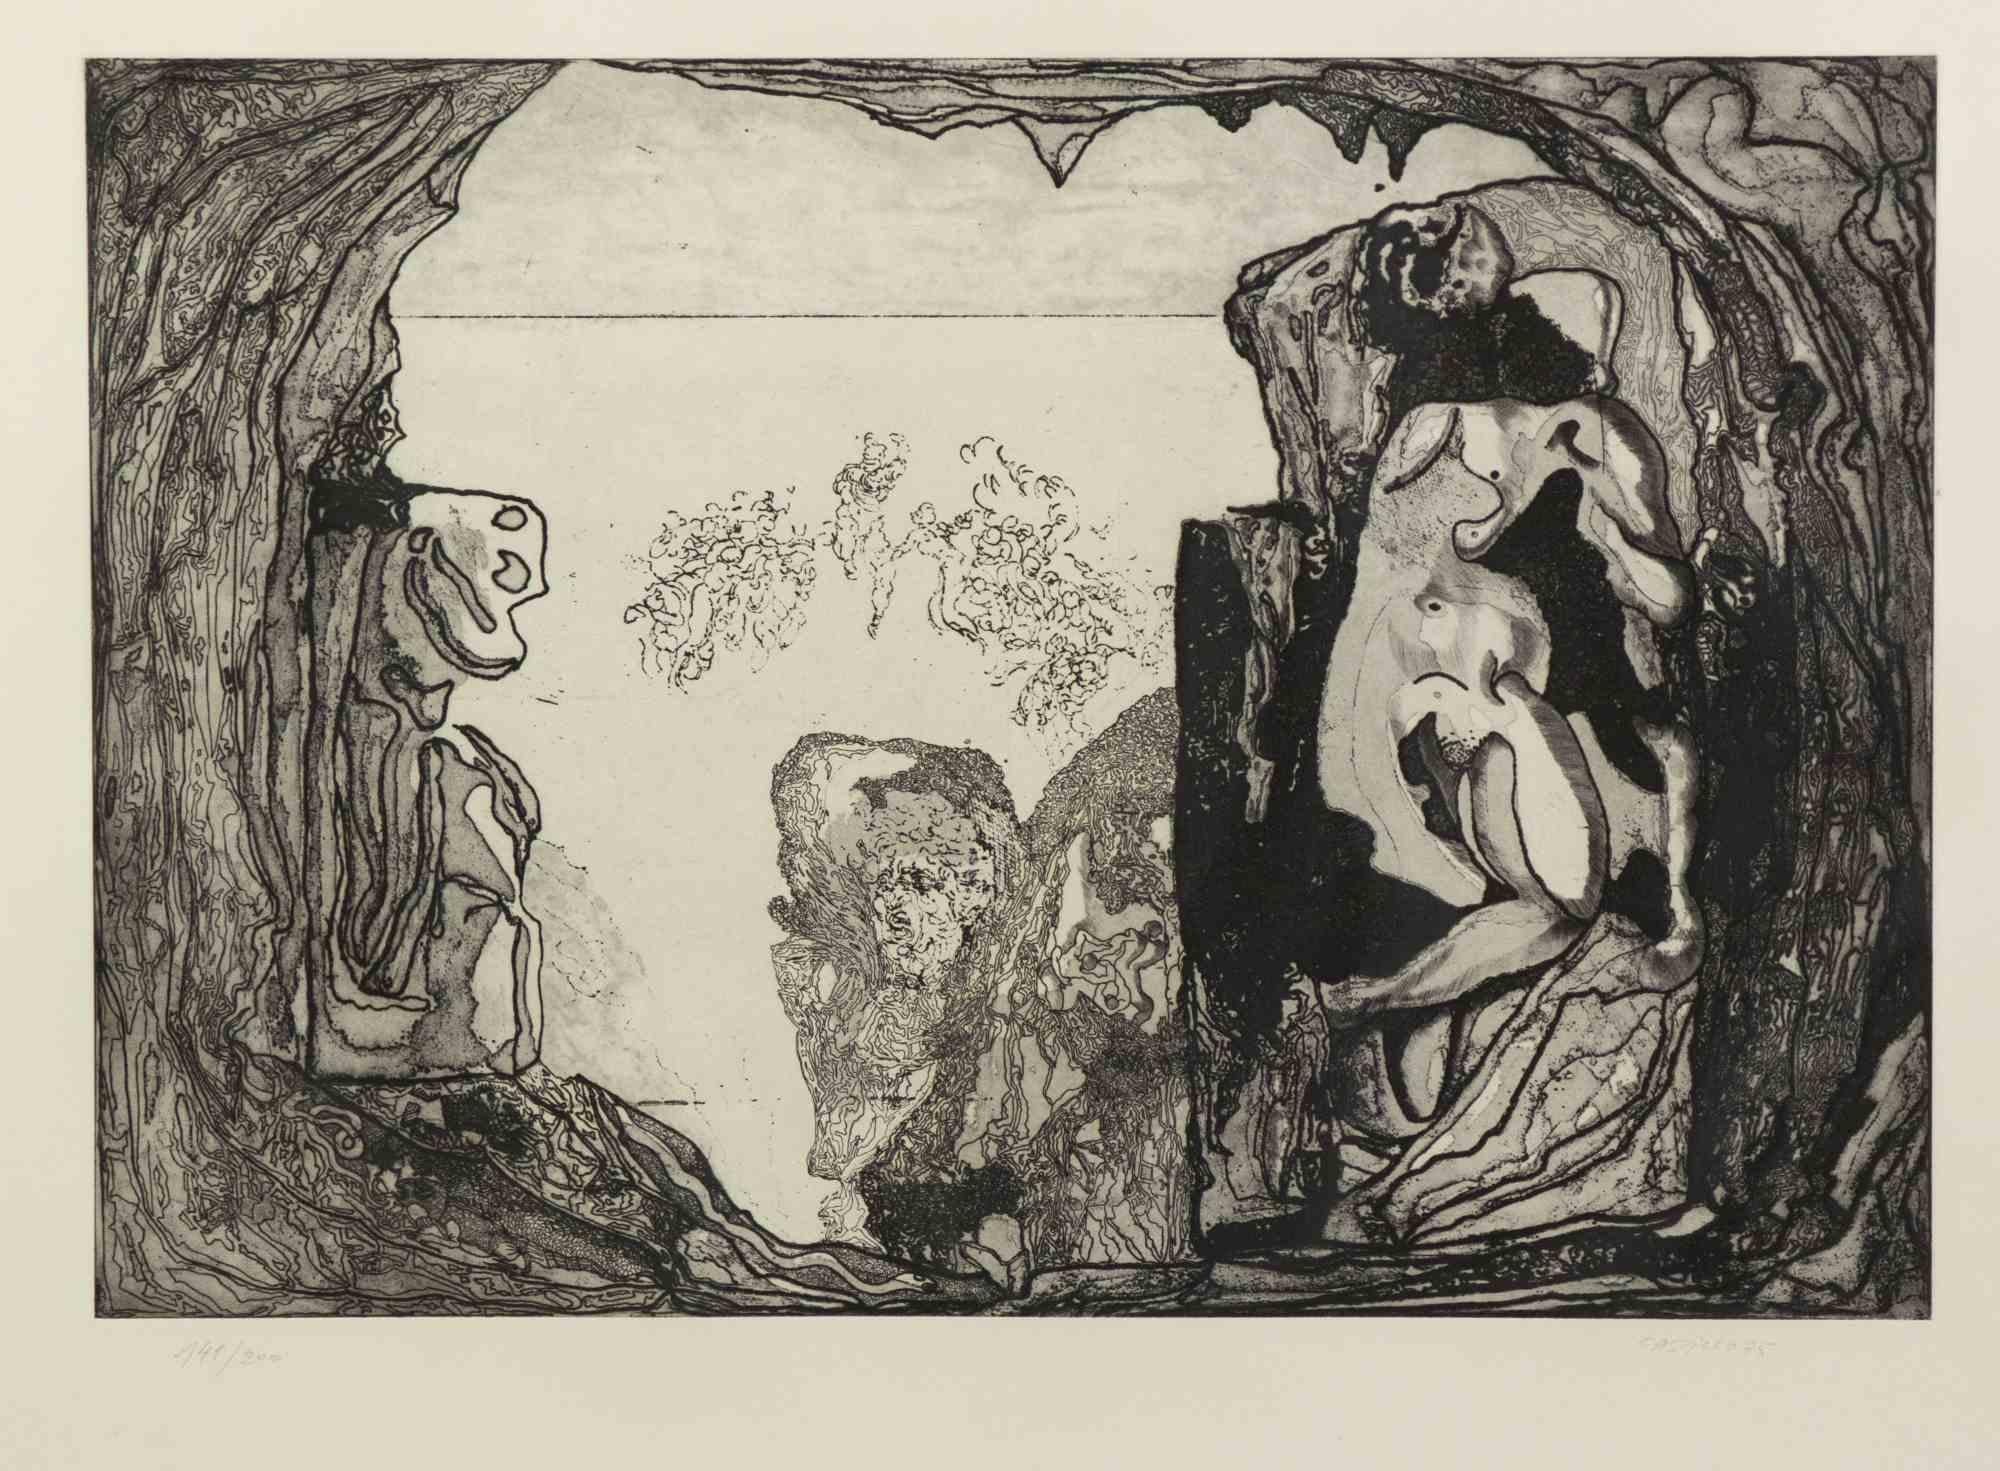 Hommage an Michelangelo ist ein Originalkunstwerk von Jorge Castillo aus dem Jahr 1975.

Schwarze und weiße Radierung.

Handsigniert am unteren rechten Rand.

Nummerierung rechts unten links. Ausgabe 141/200.

Inklusive Rahmen: 63 x 2,5 x 83,5